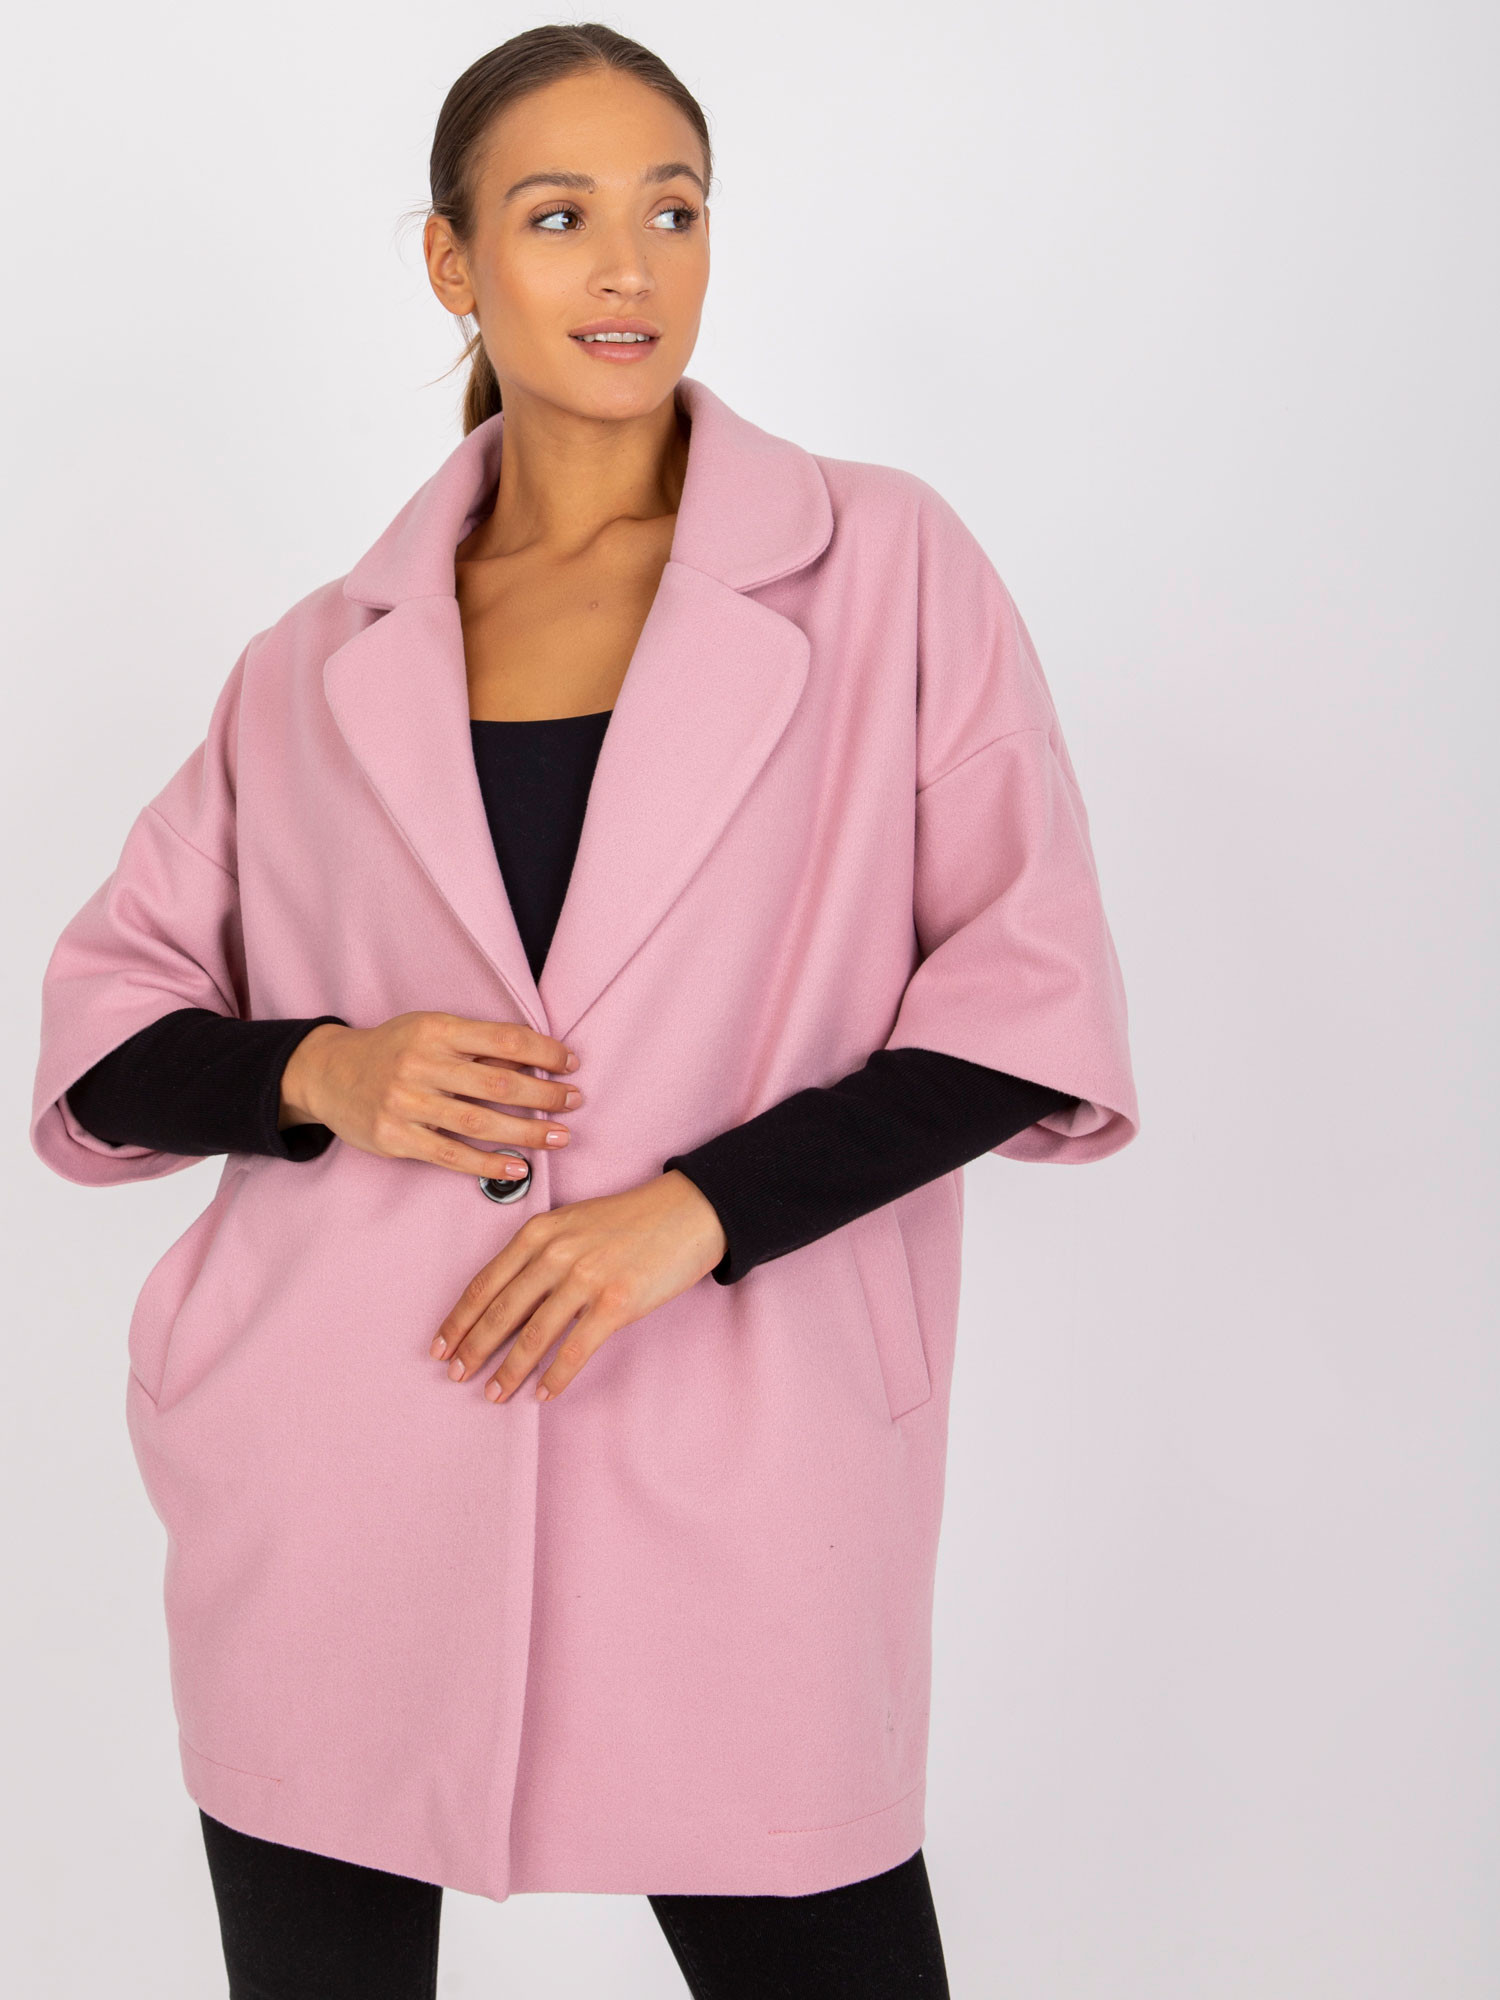 Dámský kabát CHA PL 0409.30x světle růžový L/XL